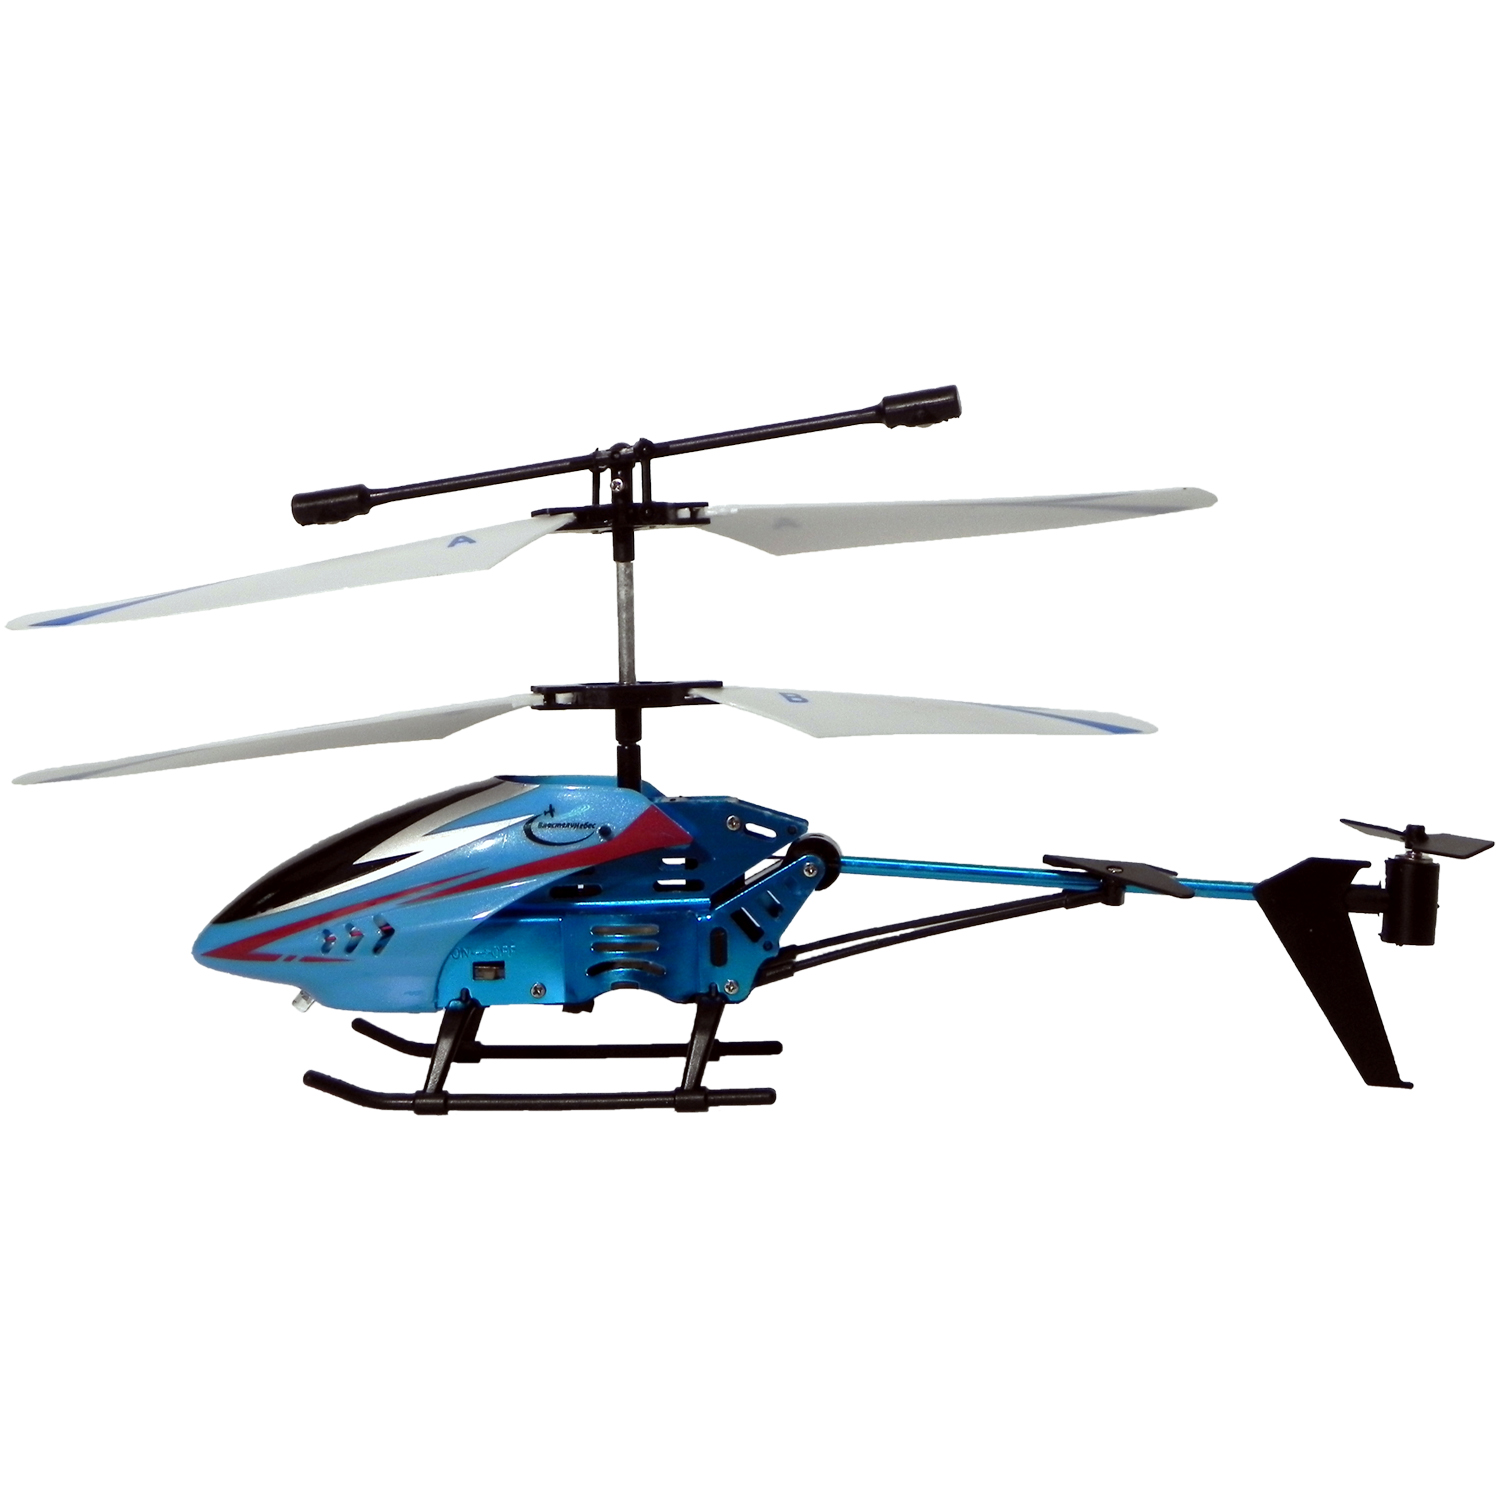 Вертолет на радиоуправлении Властелин небес Стриж синий ВН 3360blue